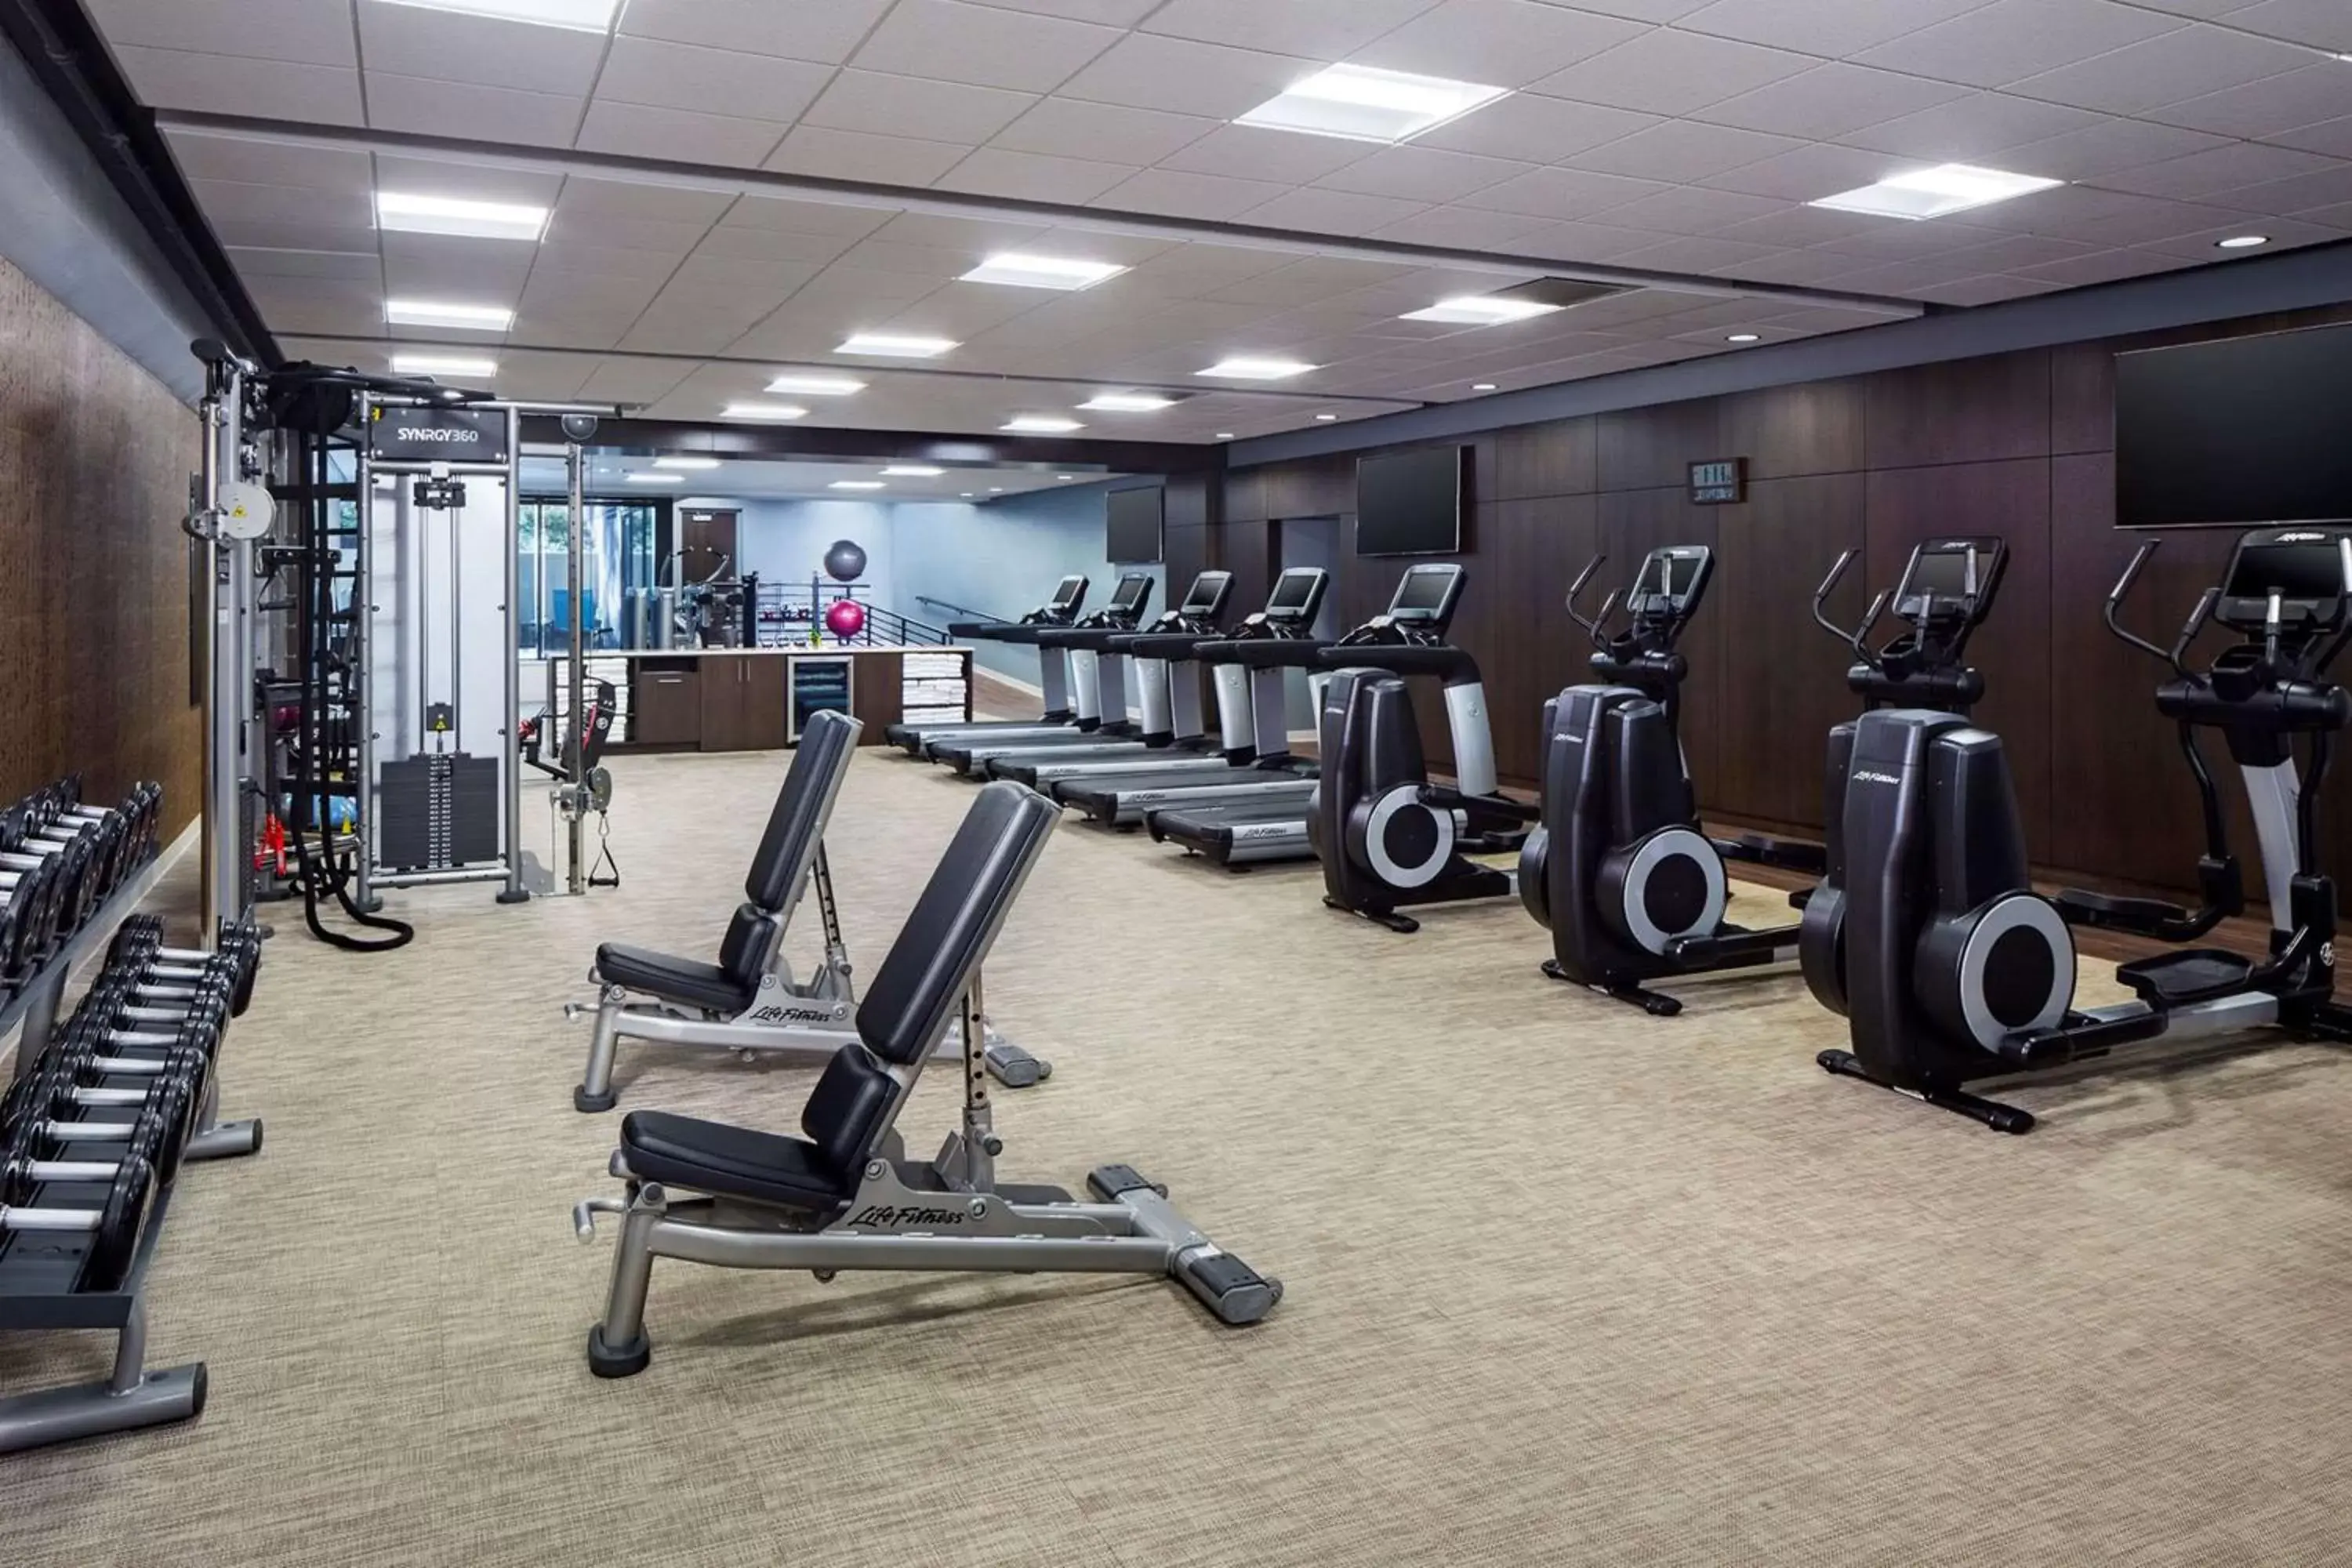 Fitness centre/facilities, Fitness Center/Facilities in Hyatt Regency Columbus